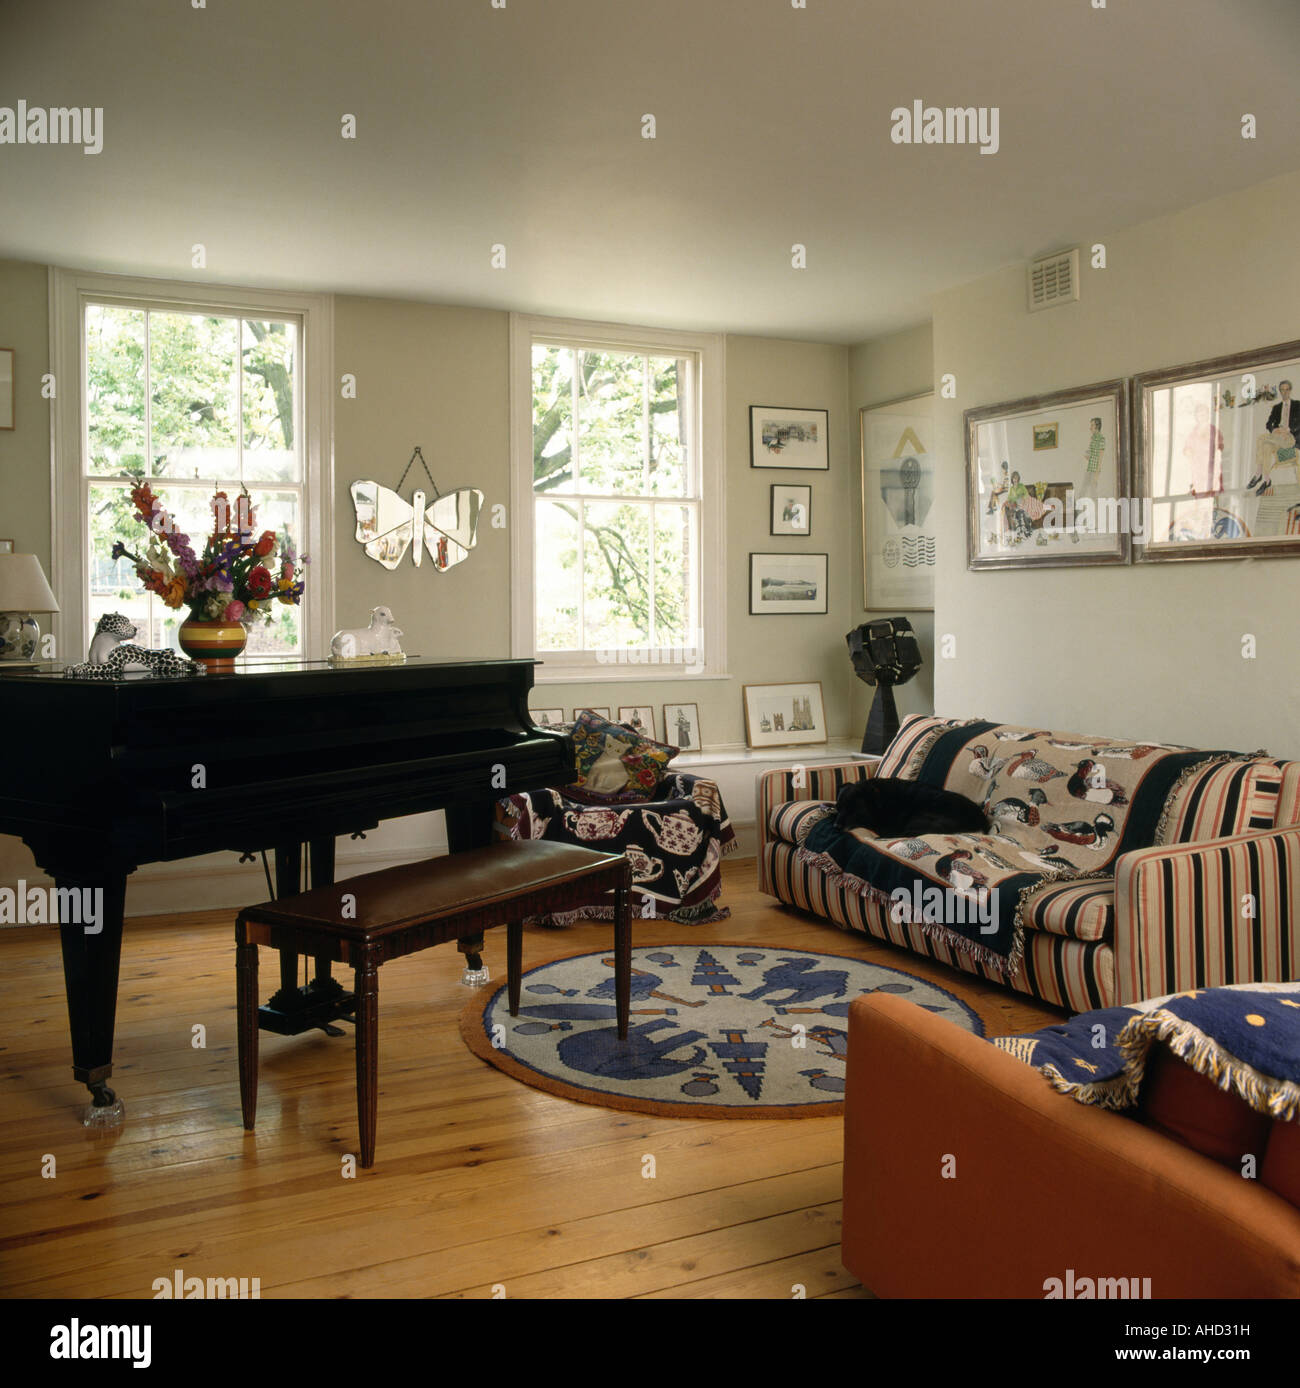 Flügel im Wohnzimmer mit gemusterten Teppichen auf gestreiften Sofa und  Holzboden der achtziger Jahre Stockfotografie - Alamy